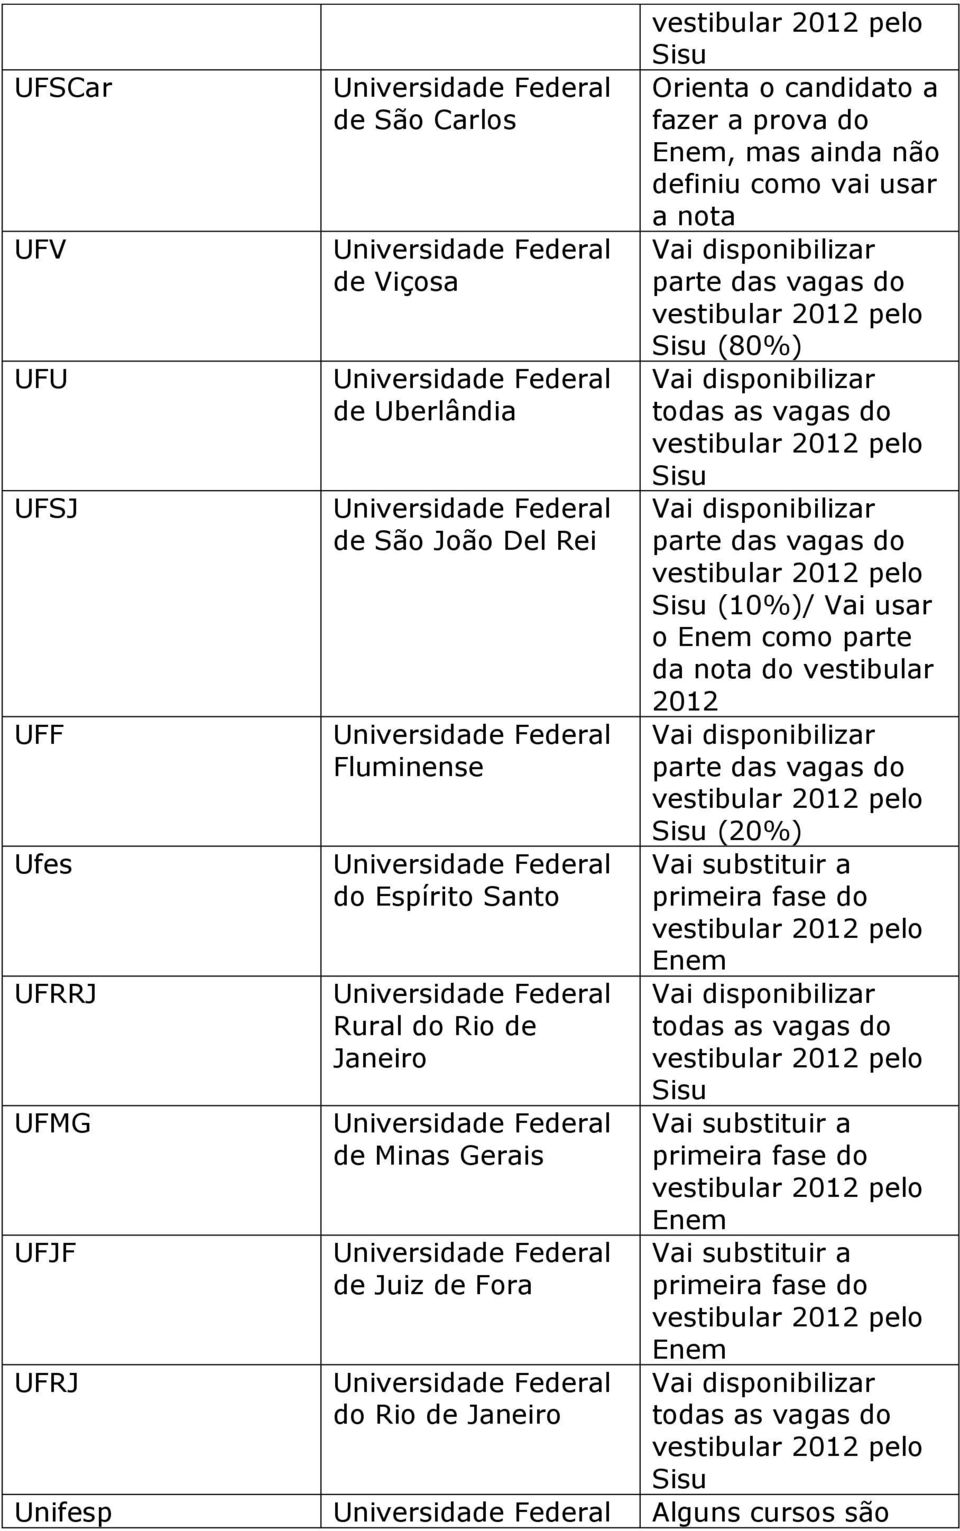 parte da nota do vestibular 2012 UFF Fluminense (20%) Ufes do Espírito Santo UFRRJ Rural do Rio